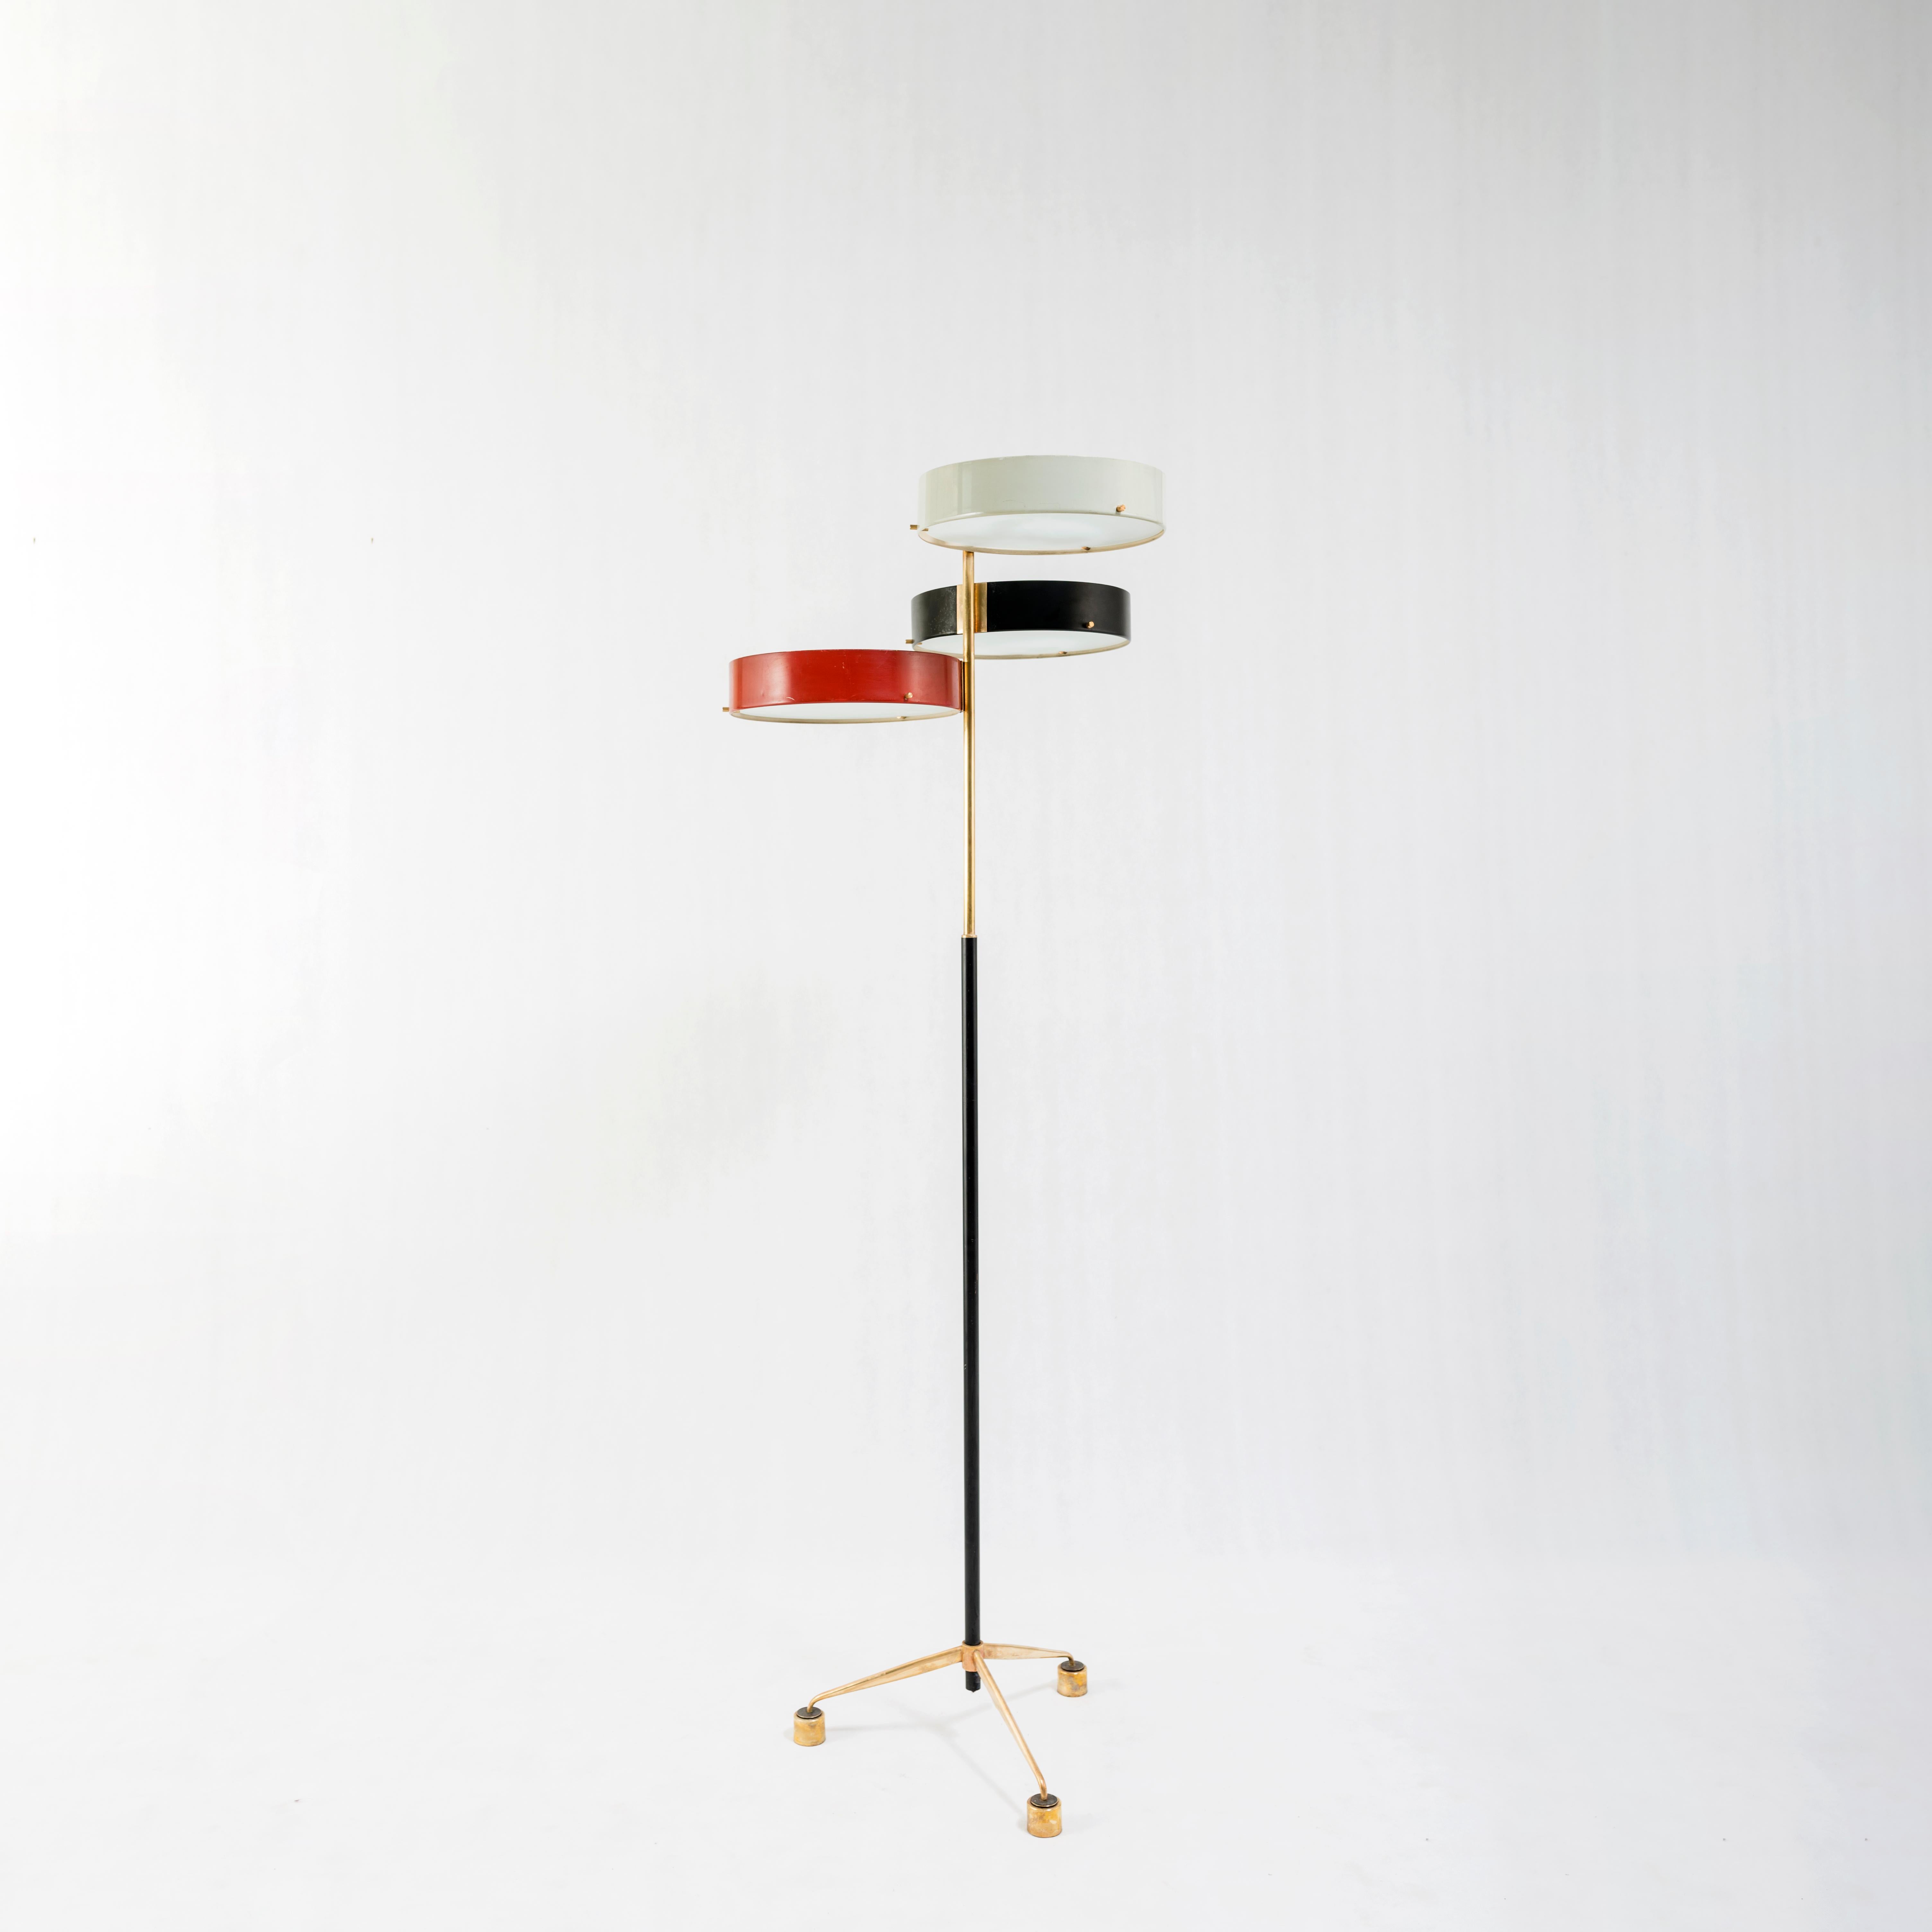 Le lampadaire Bruno Gatta est une pièce rare et unique dans le domaine du design d'éclairage du milieu du XXe siècle, qui témoigne de l'esprit d'innovation et de la vision artistique de son créateur. Fabriquée avec une attention méticuleuse aux